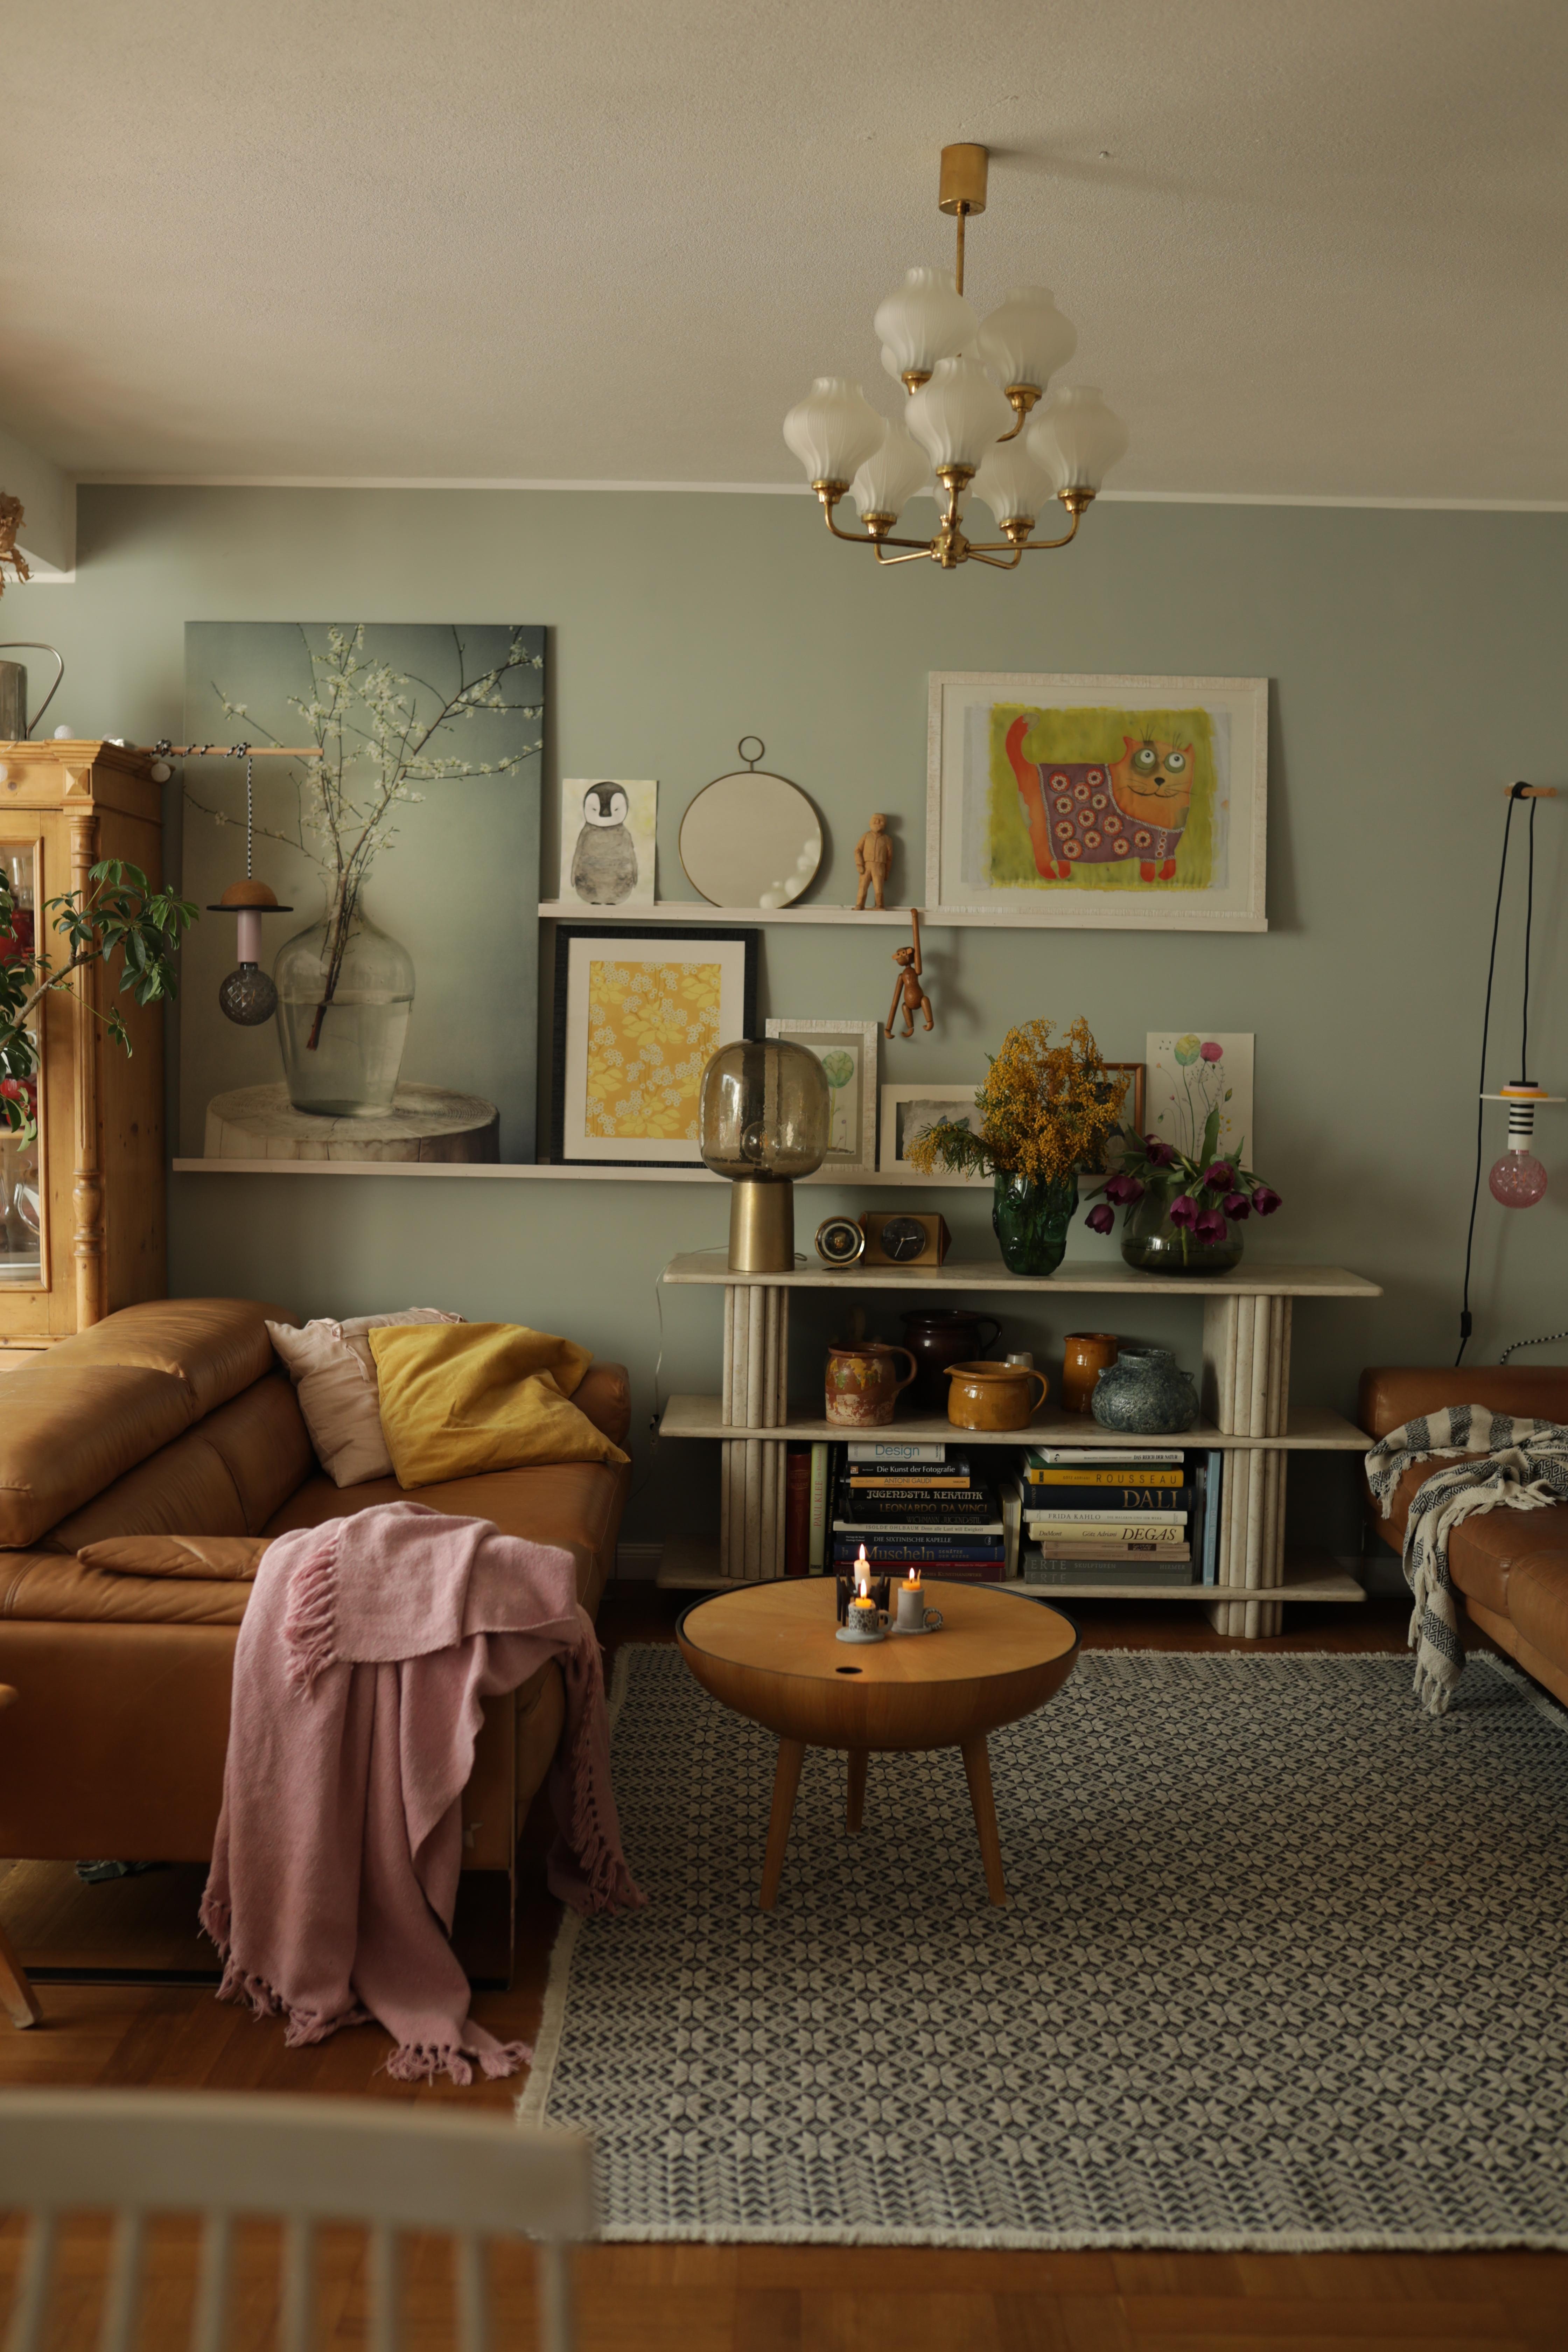 #Wohnzimmer #livingroom #eclectichome #vintage